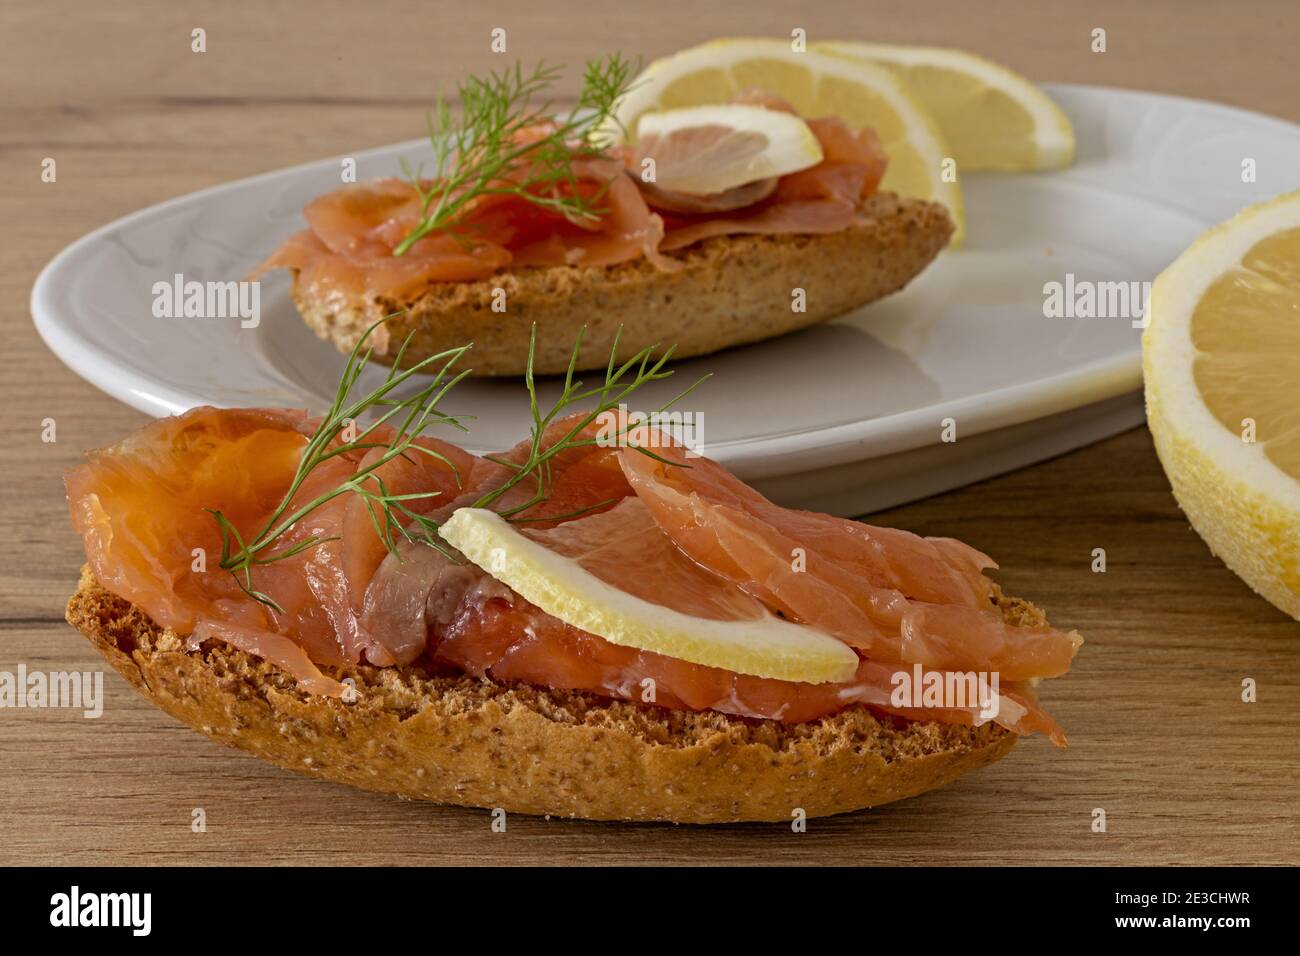 crostini di pane al salmone con limone primo piano Banque D'Images